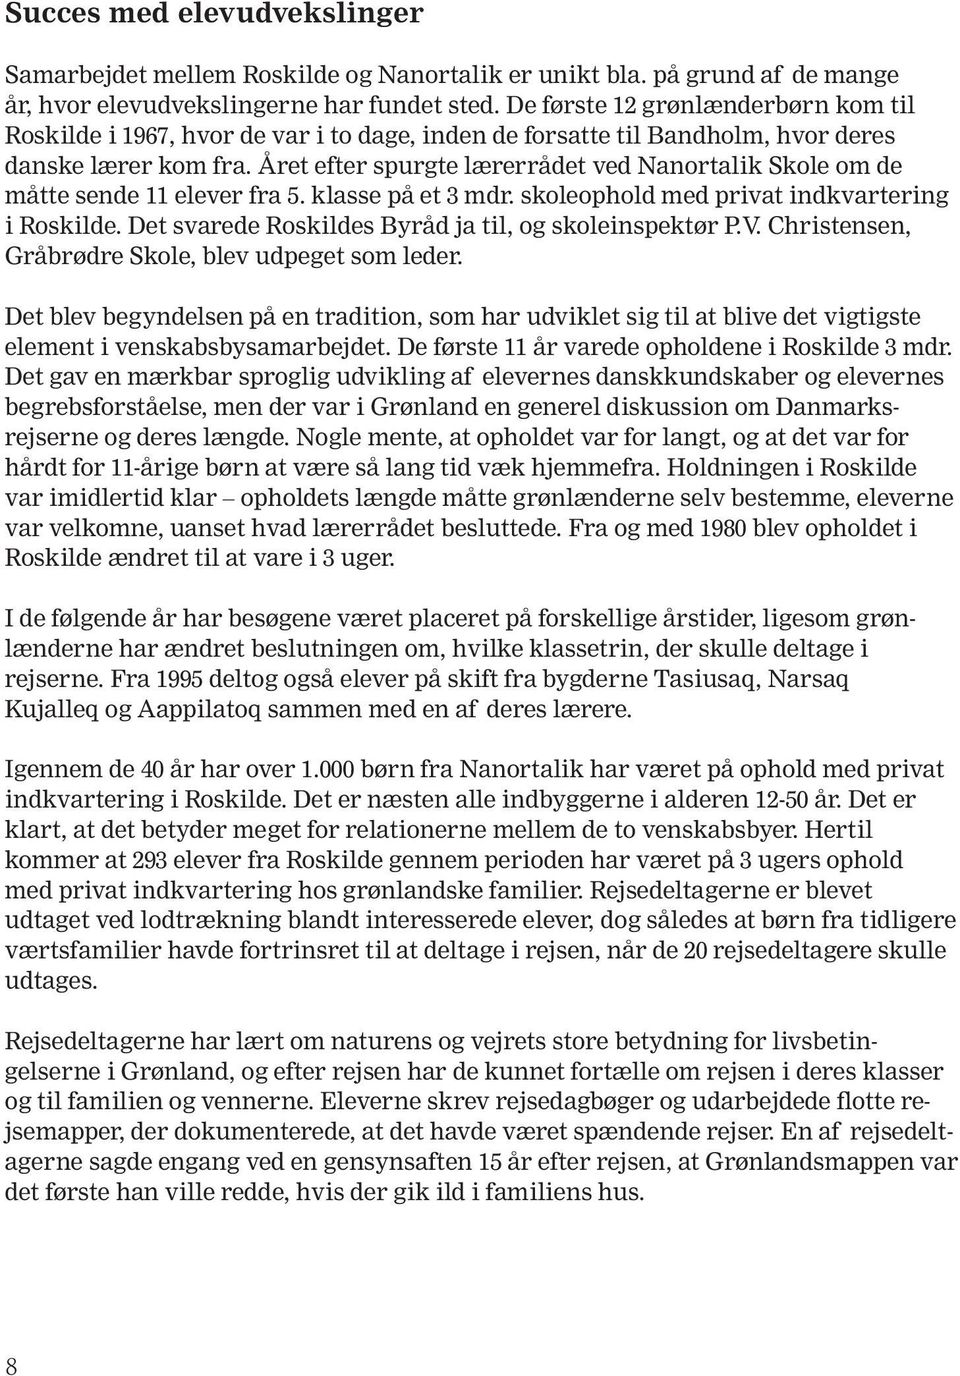 Året efter spurgte lærerrådet ved Nanortalik Skole om de måtte sende 11 elever fra 5. klasse på et 3 mdr. skoleophold med privat indkvartering i Roskilde.